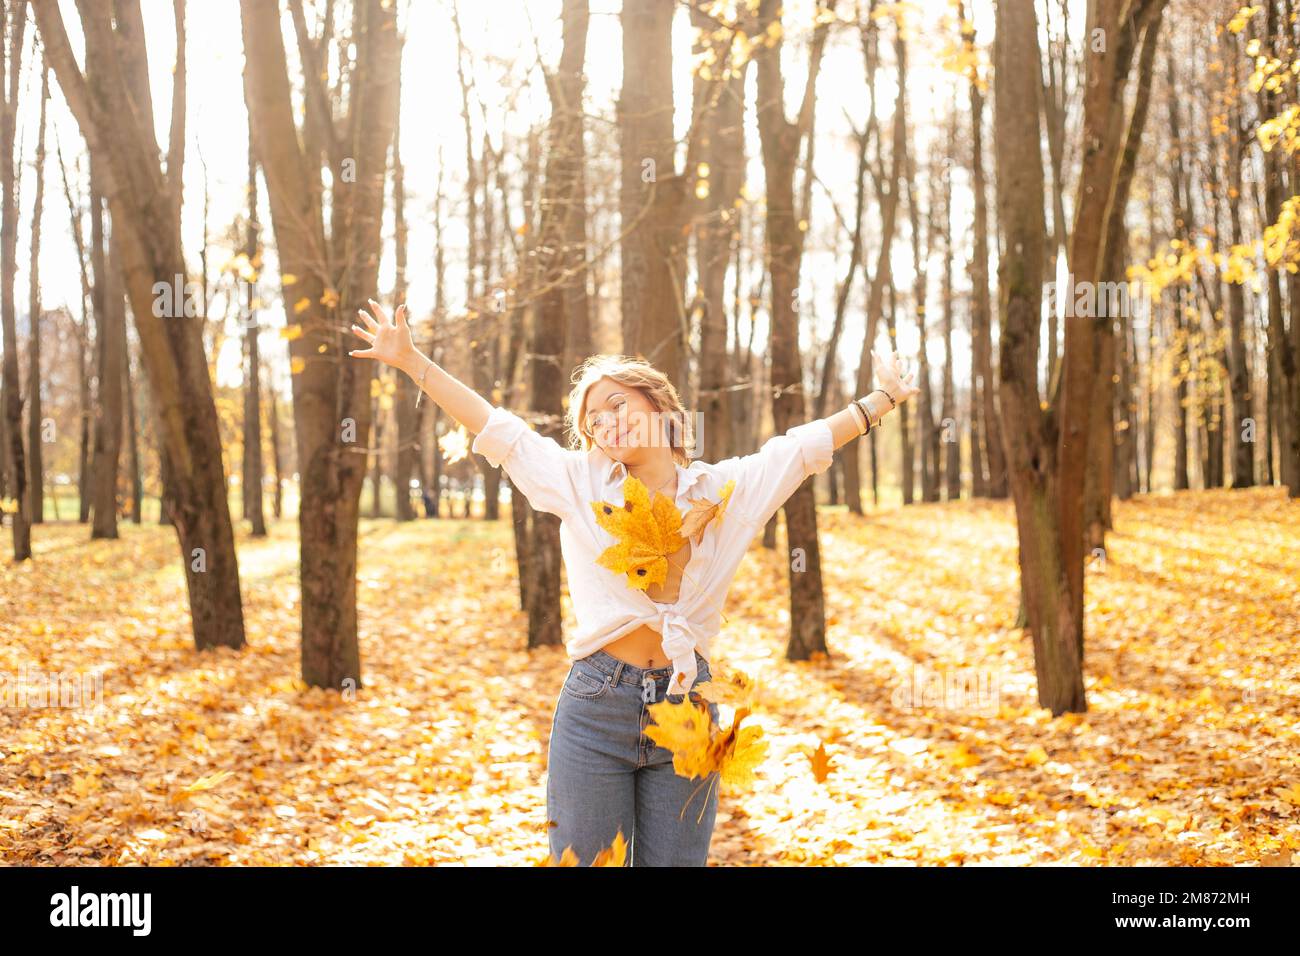 Glänzende, wundervolle blonde Frau, die im goldenen Wald spaziert, Eichen- und Ahornblätter sammelt, frohen, warmen Herbst, schau in die Kamera. Stockfoto